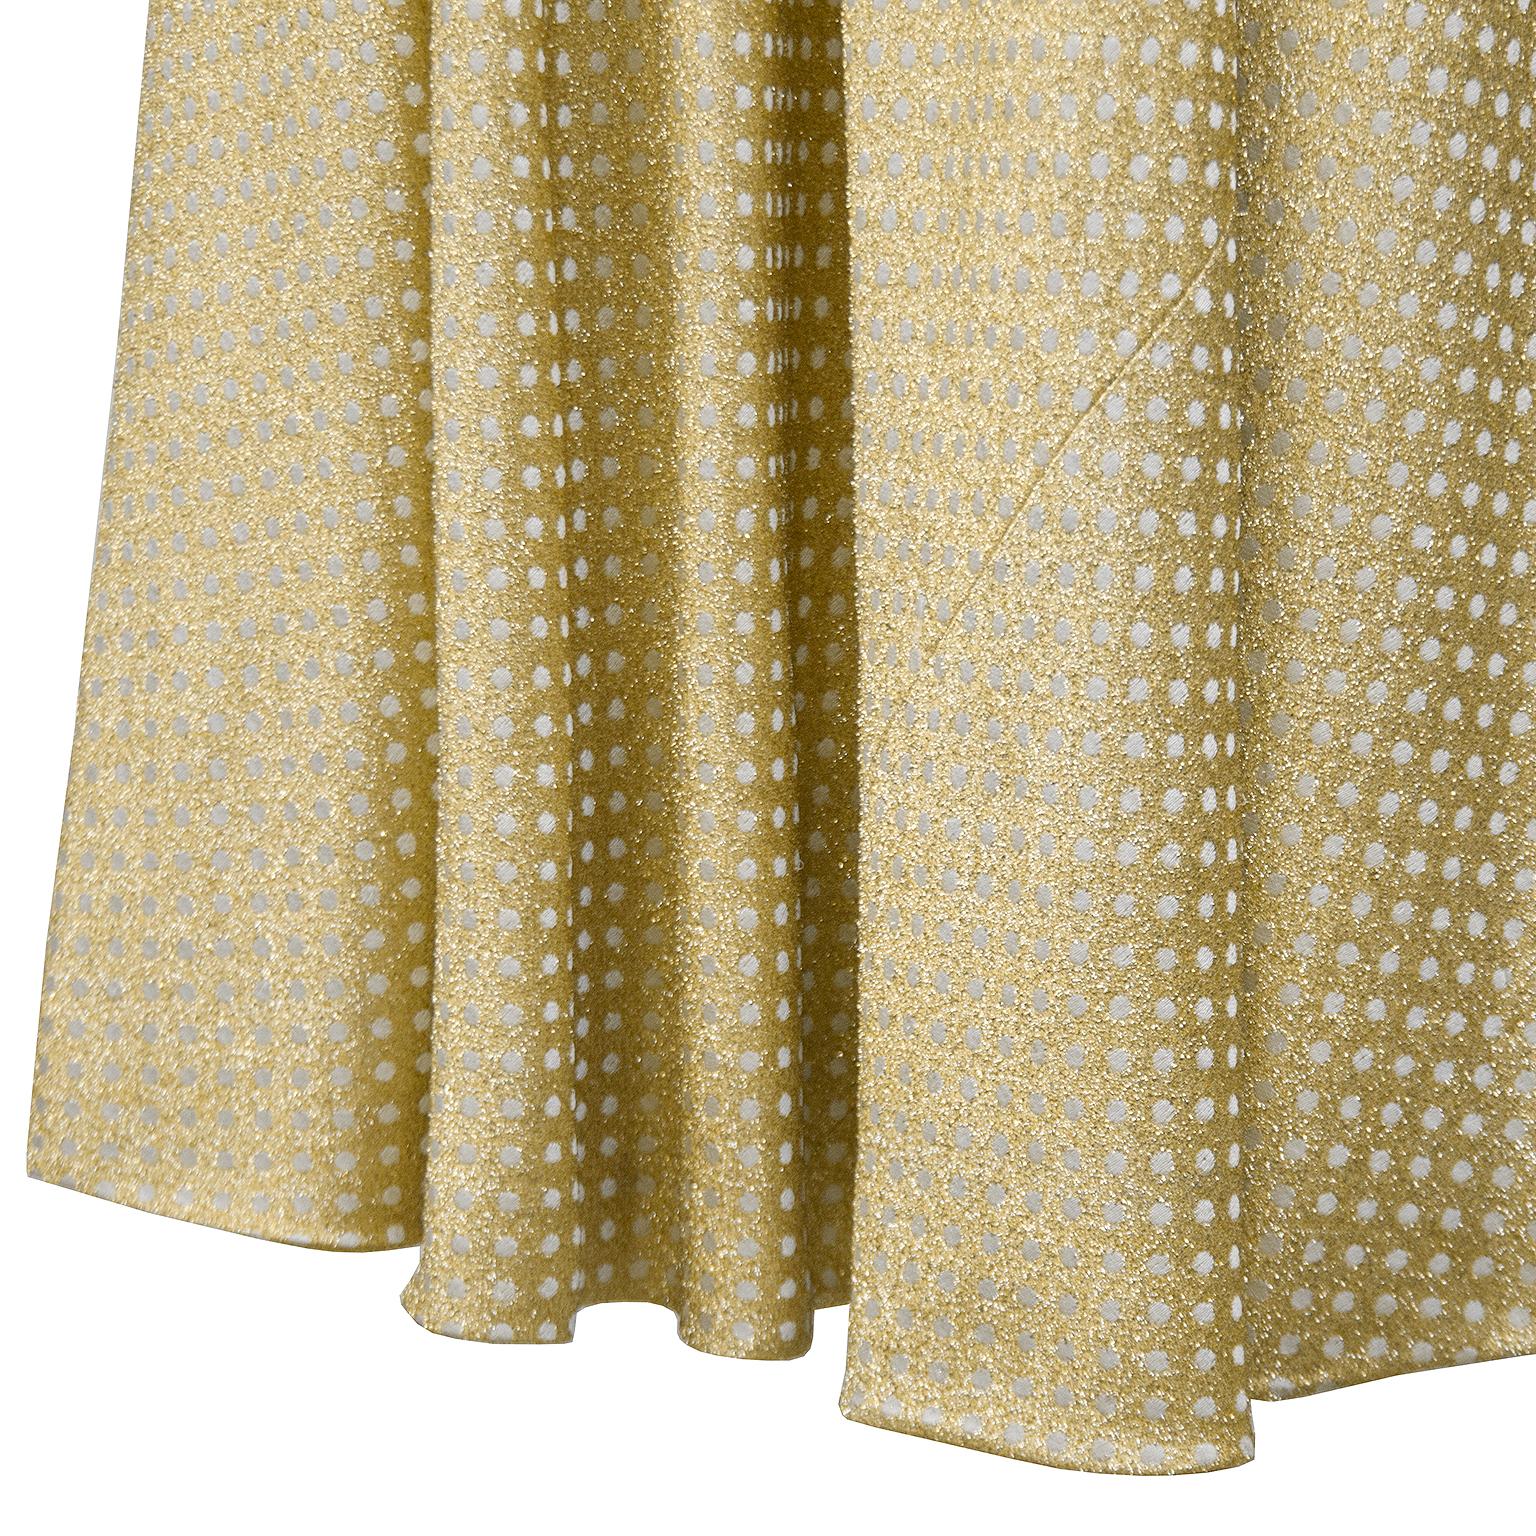 Women's 1970's Geoffrey Beene Gold Metallic Knit Dress w Pearls For Sale